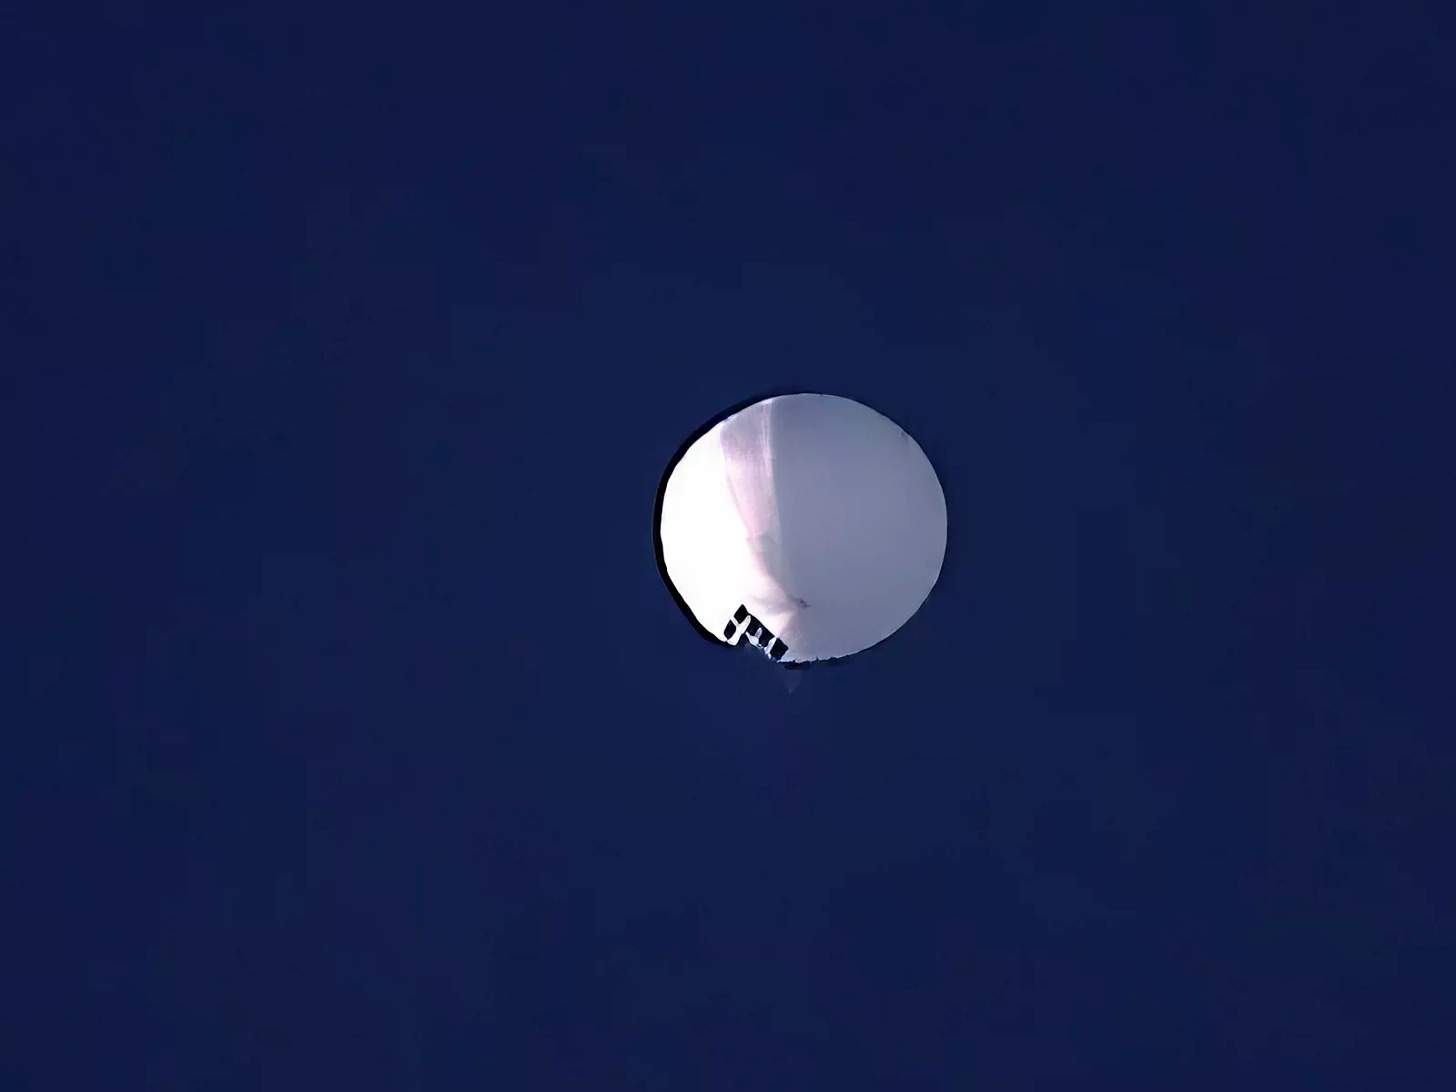 A white sphere against a deep blue sky.